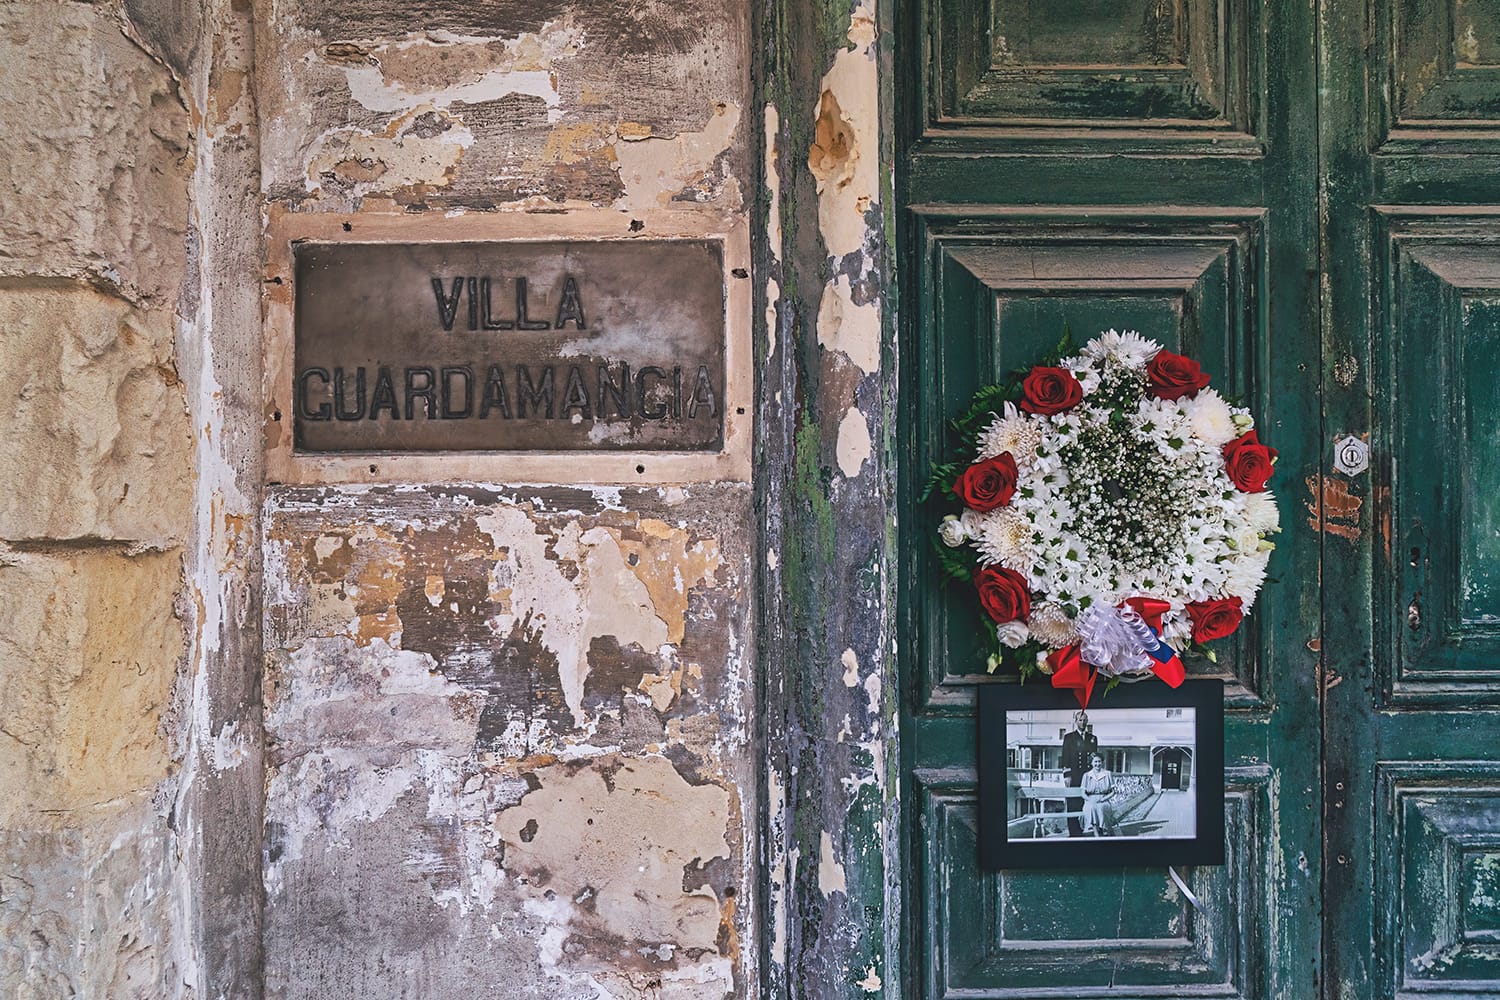 Villa Guardamangia, bekas rumah Ratu Inggris Elizabeth, saat dia tinggal di Malta antara 1949-1951.  Karangan bunga dan bunga di dekat pintu sehubungan dengan kematiannya: Pieta, Malta